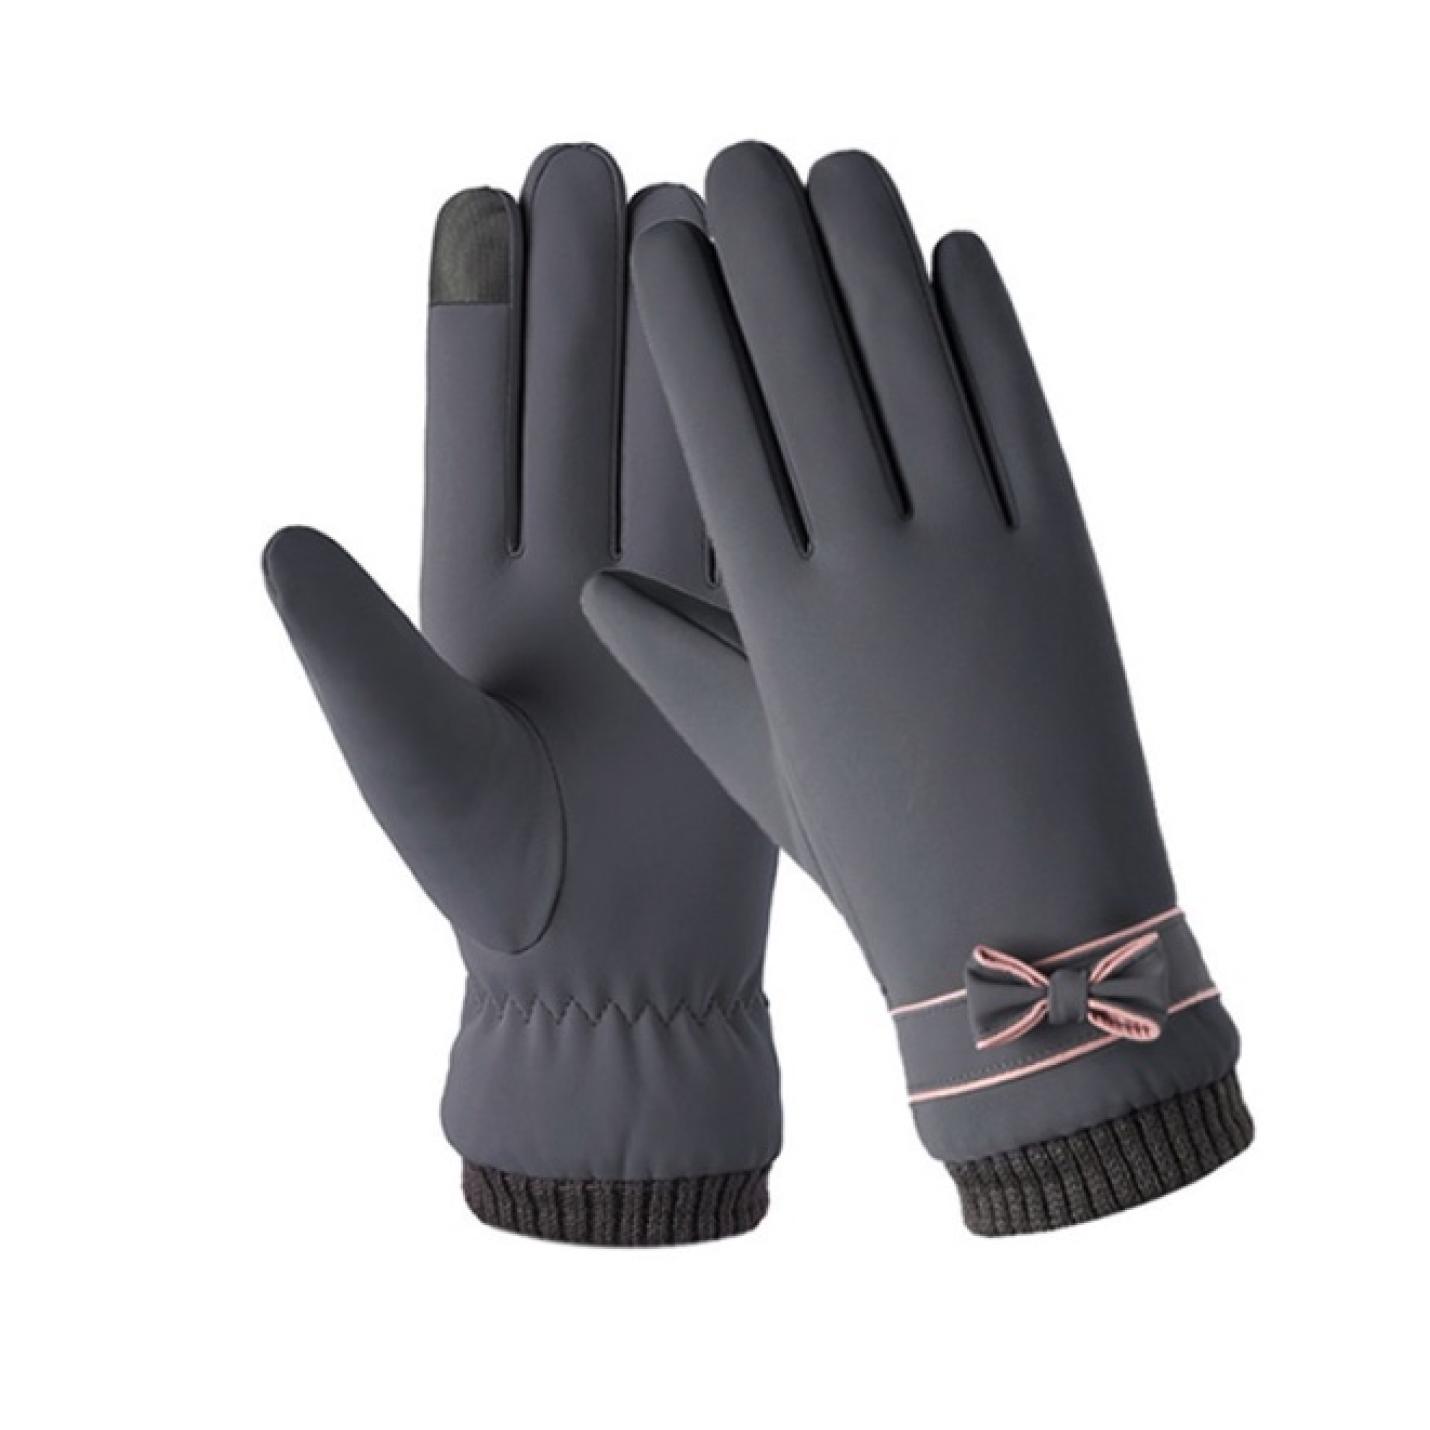 Hidzo Handschoenen - Unisex - Grijs - Maat S/M - Touchscreen